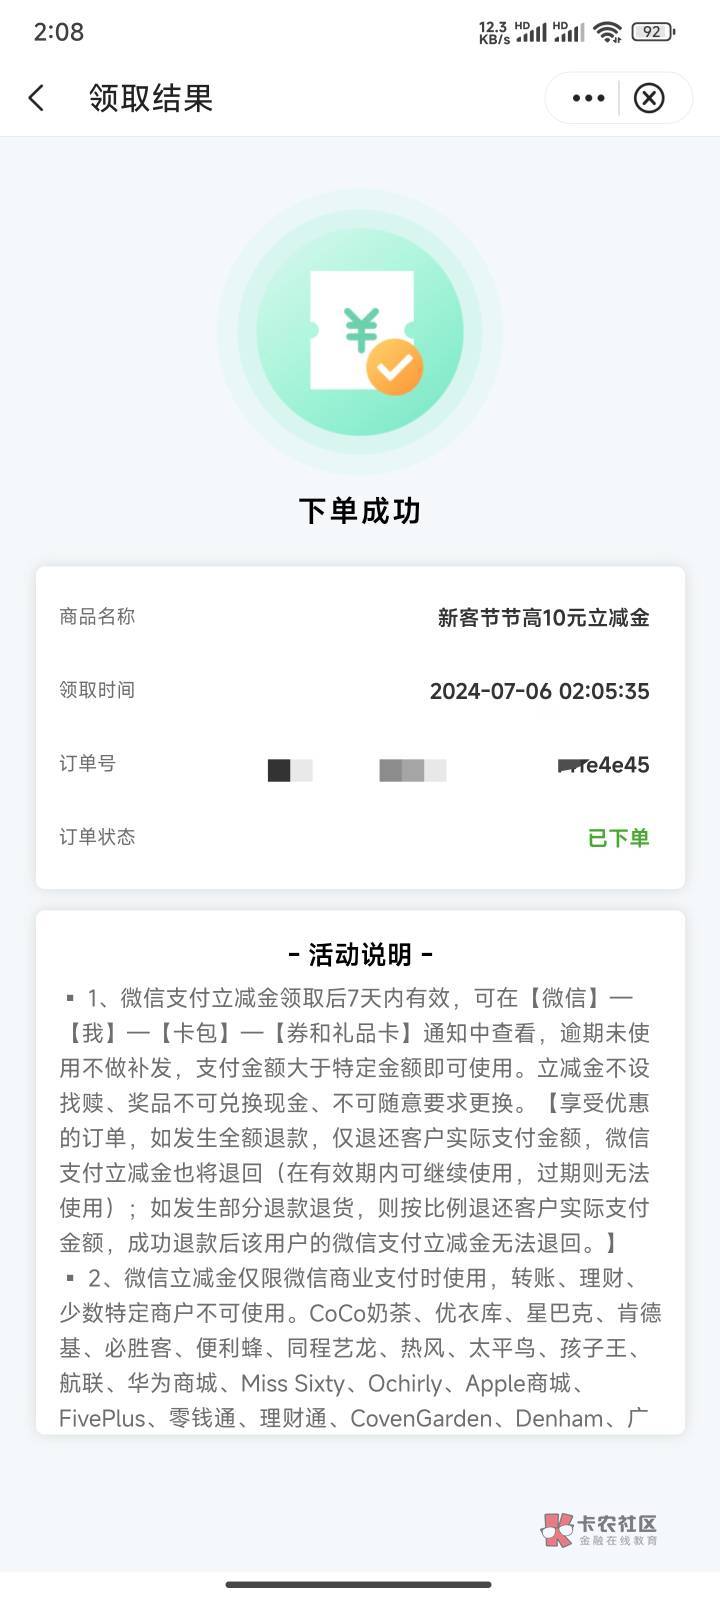 上海中行新客注销换预留怎么领取不到账，要解绑微信吗

48 / 作者:哥中之哥 / 